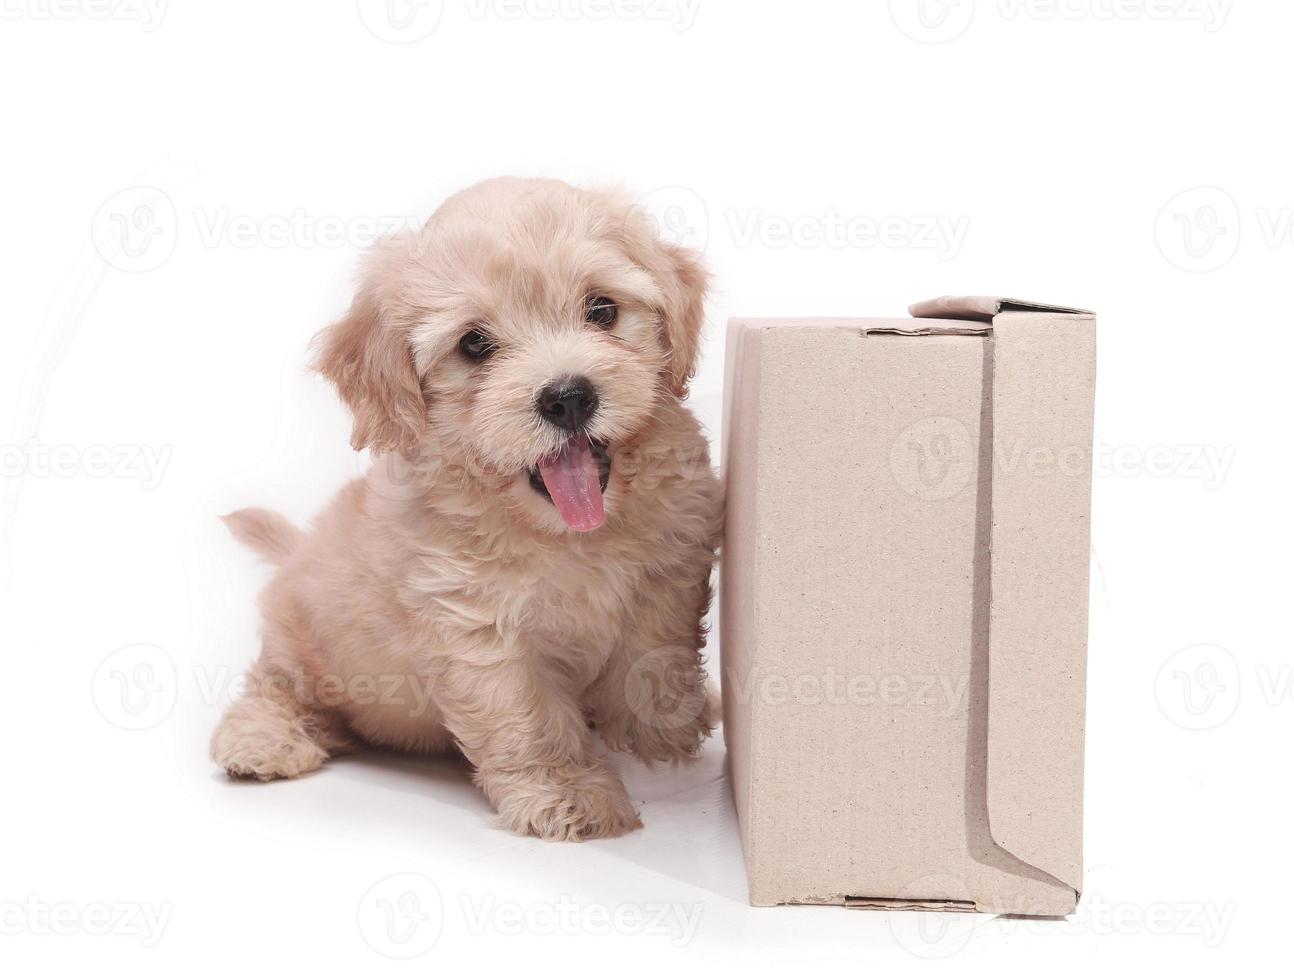 Cachorros de perro marrón divertido perrito sonriente una pata y lindo cachorro en blanco foto